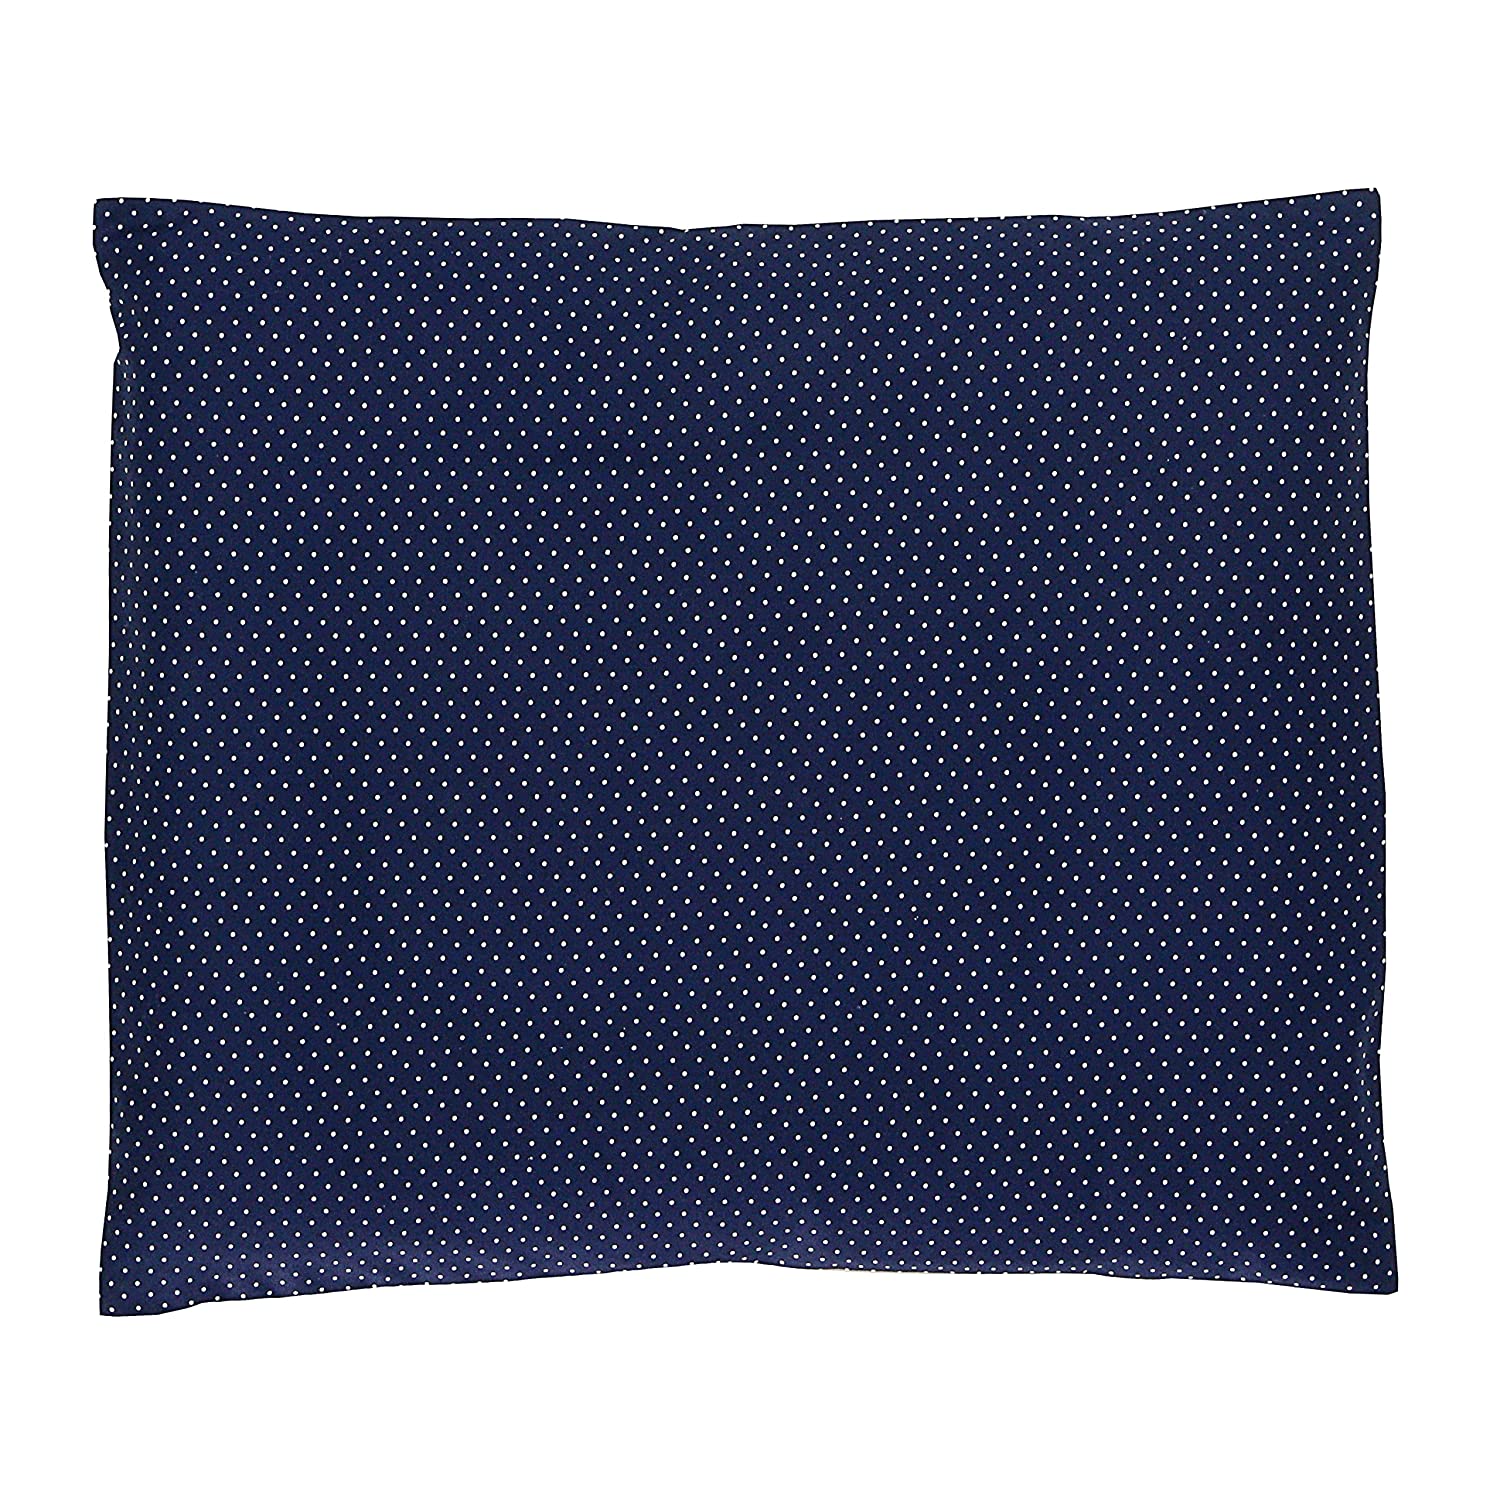 Ullenboom ® Baby Cushion Cover 35 X 40 Cm Blue (Made In Eu) – 100% Oeko-Tex